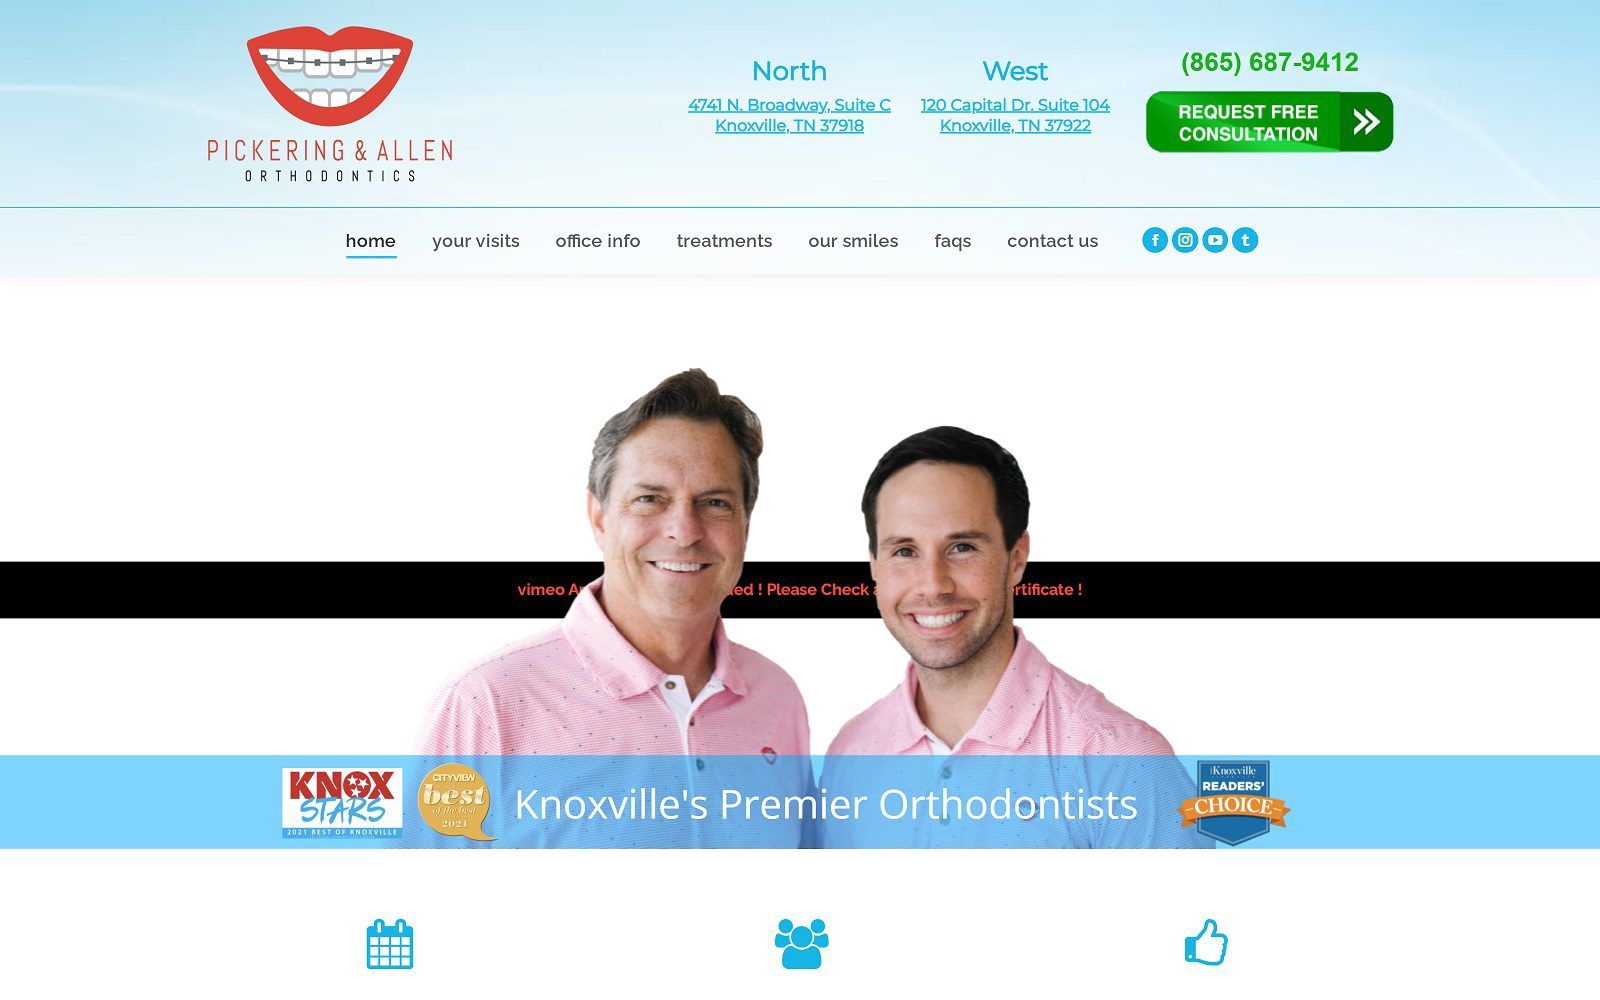 The Screenshot of Pickering & Allen Orthodontics Website